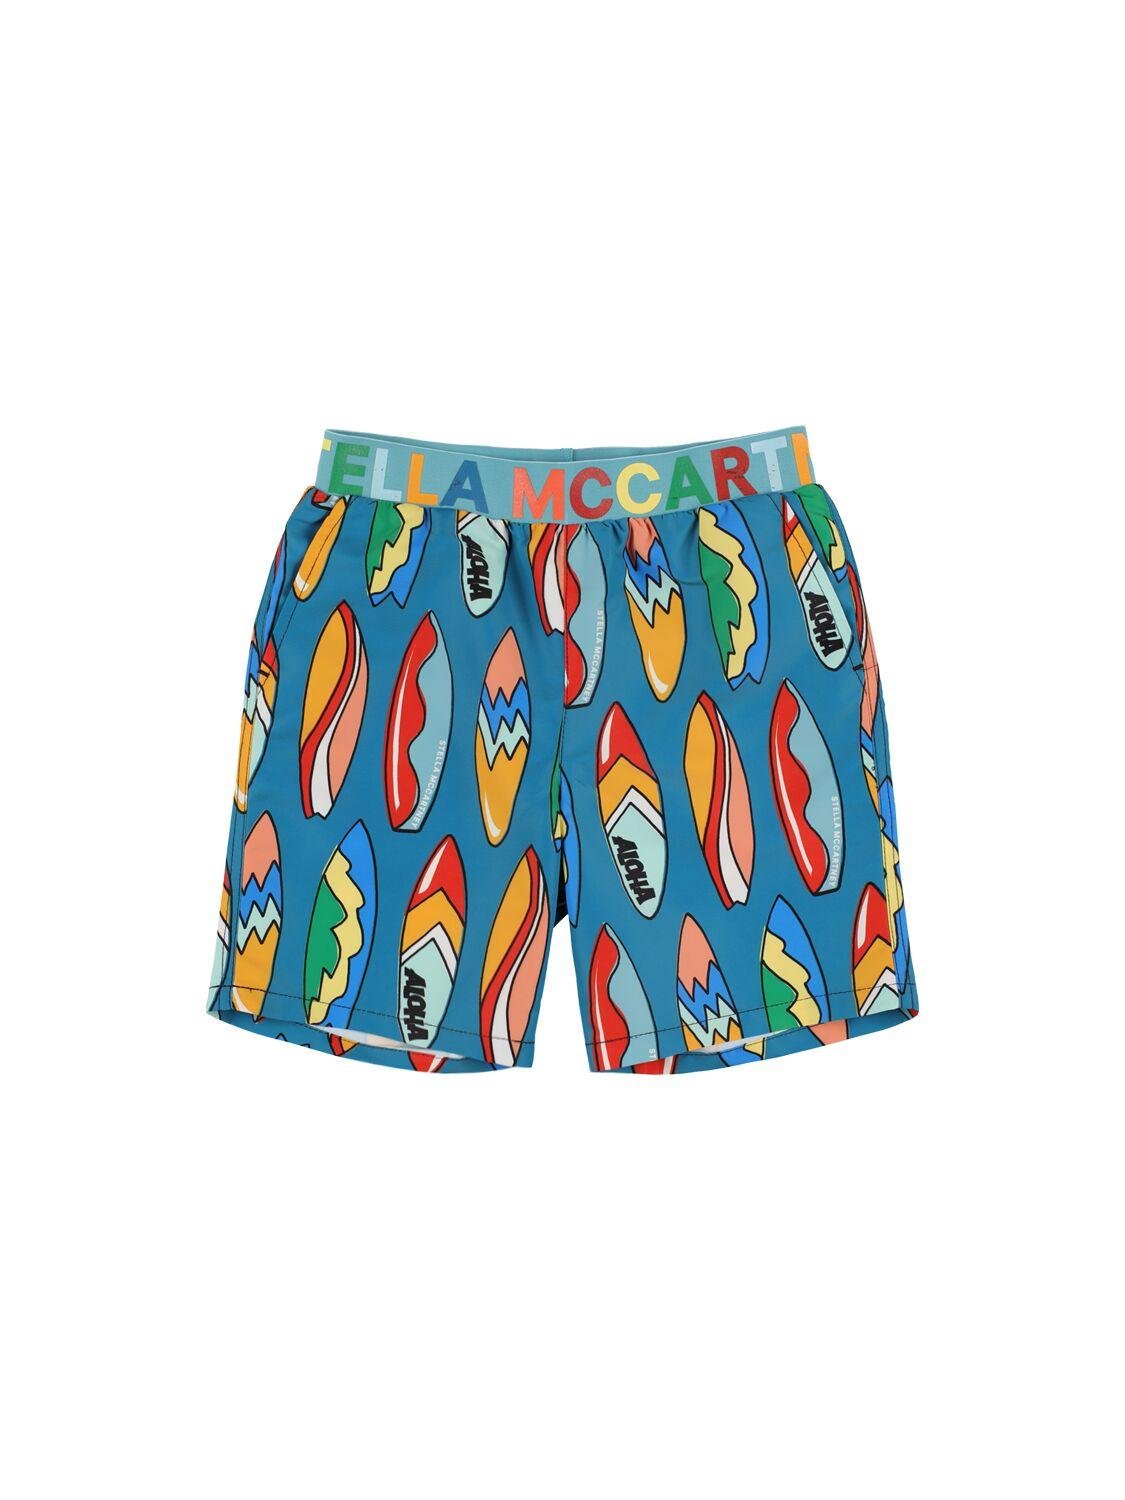 Printed Recycled Nylon Swim Shorts by STELLA MCCARTNEY